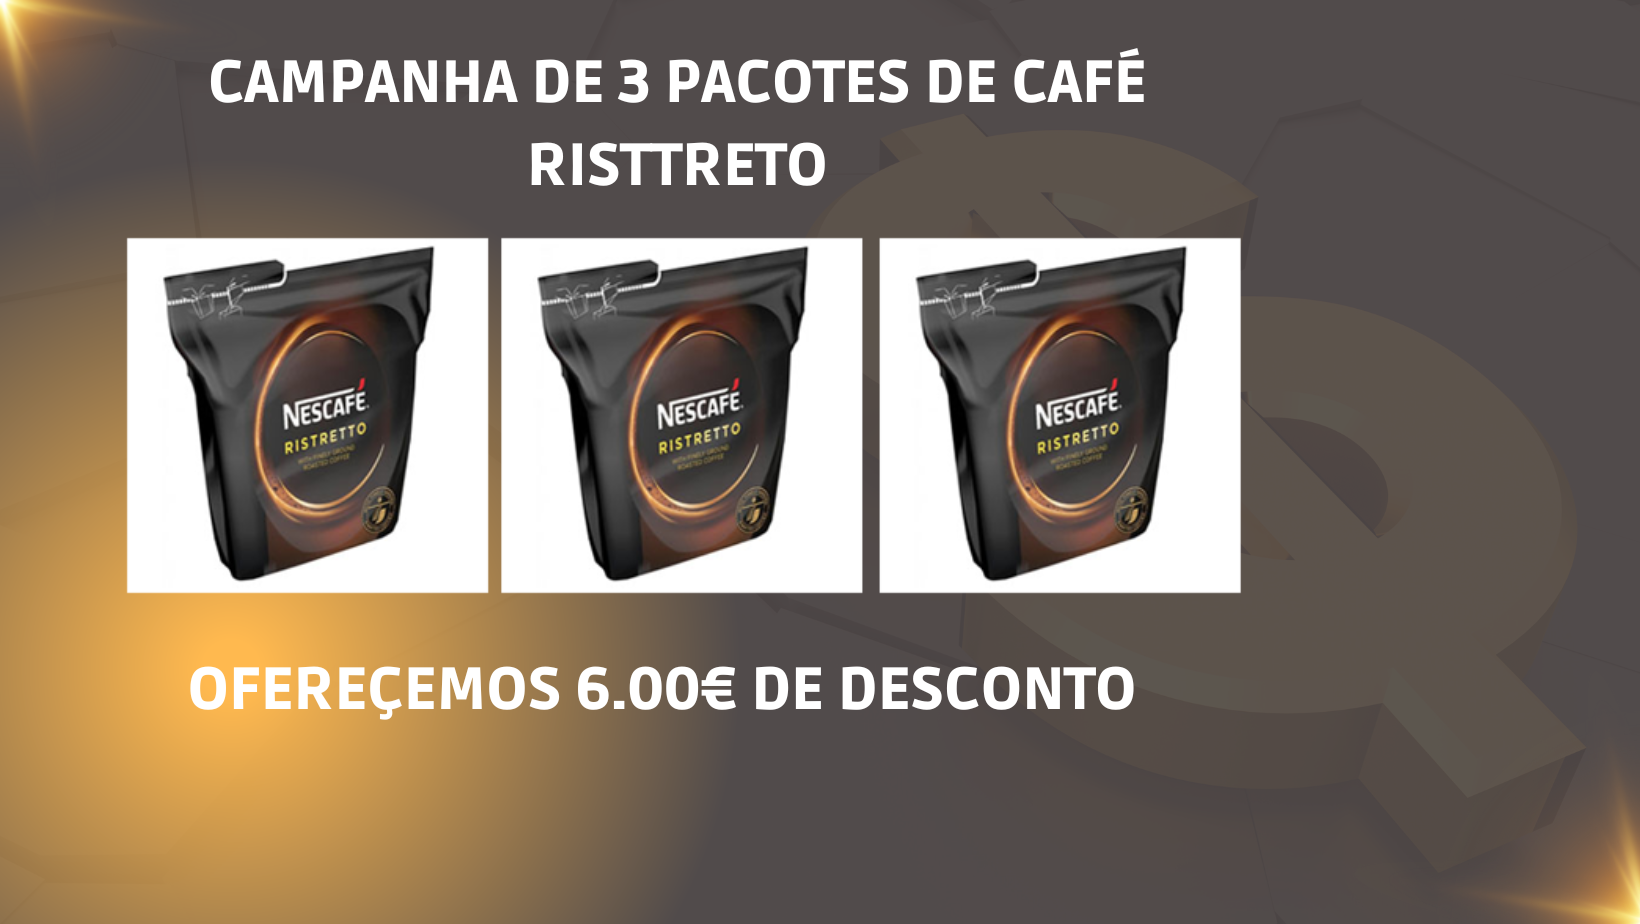 Nescafé Ristretto da Nestlé